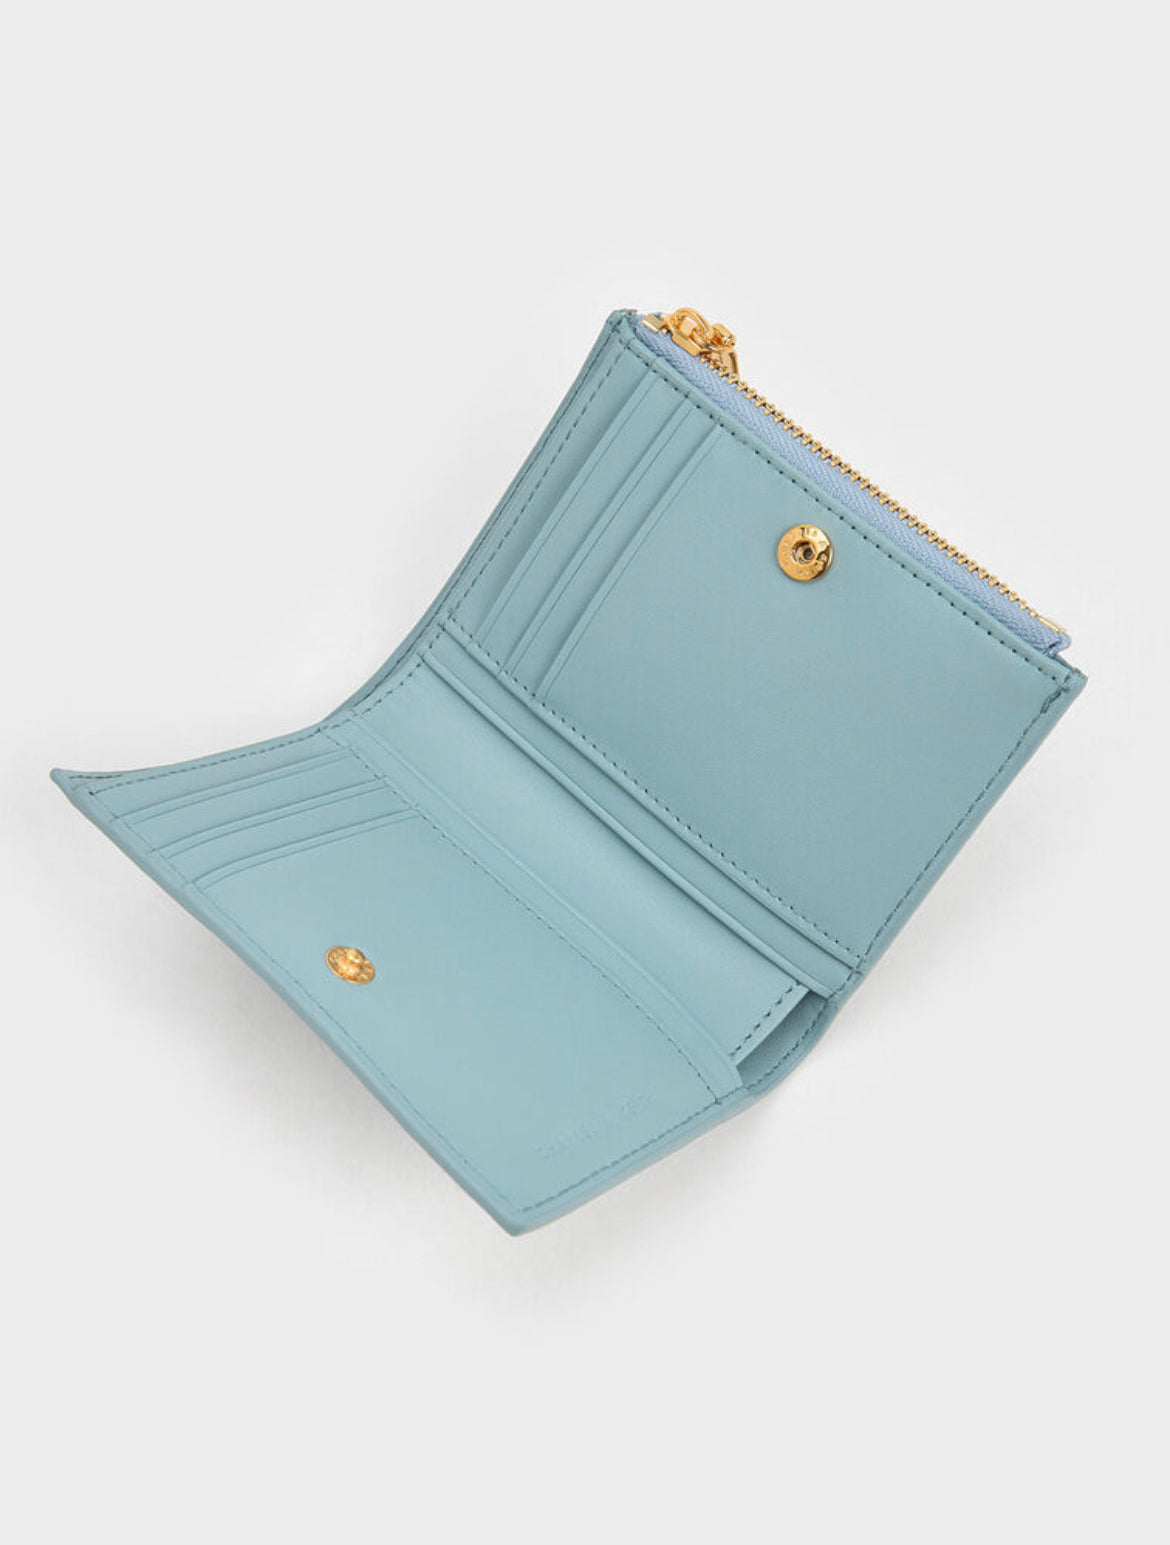 Apolline Textured Top-Zip Wallet - Slate Blue